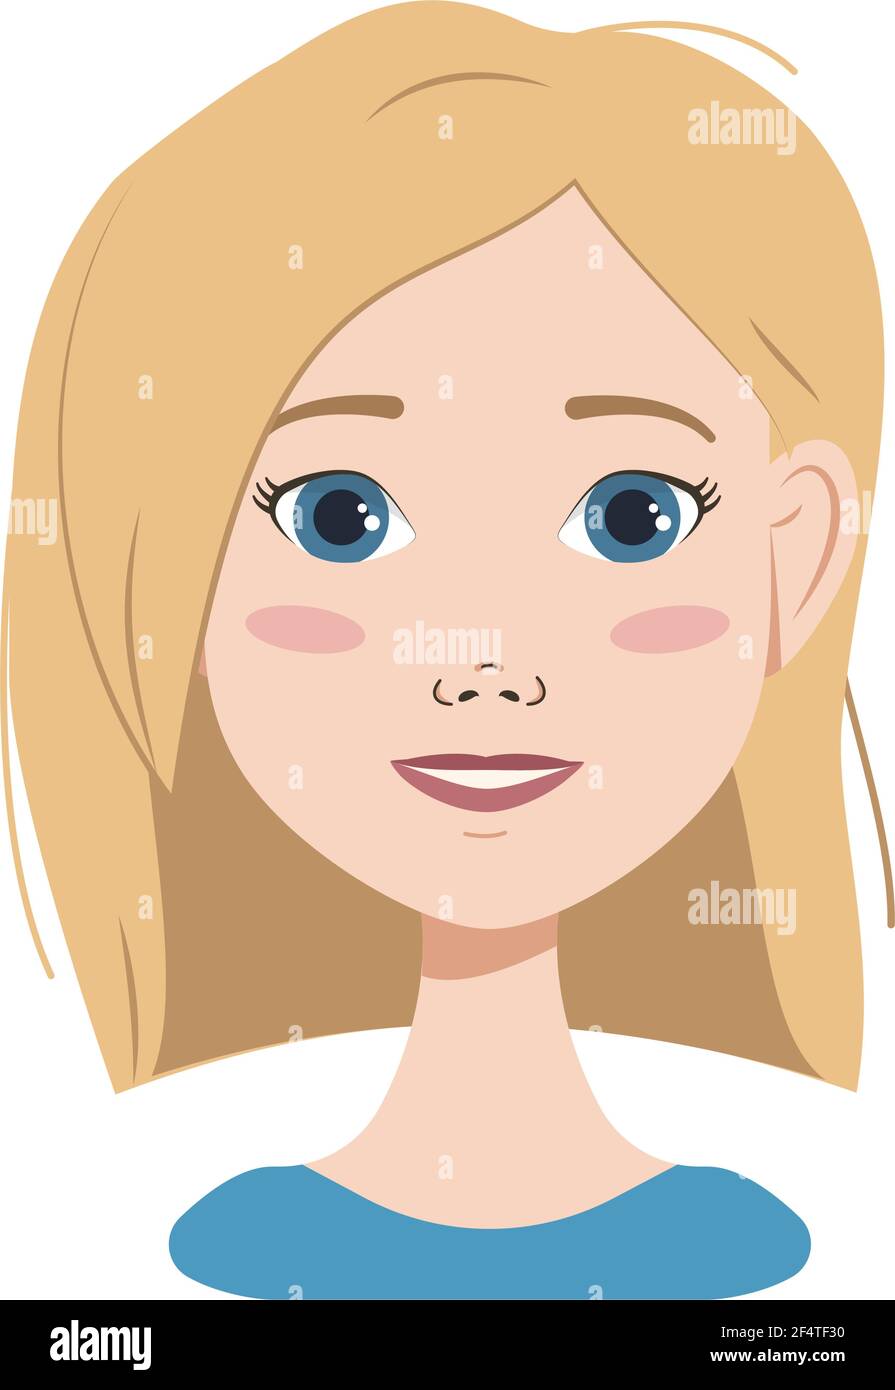 Avatar di una donna con capelli biondi, occhi blu e pettini Illustrazione Vettoriale